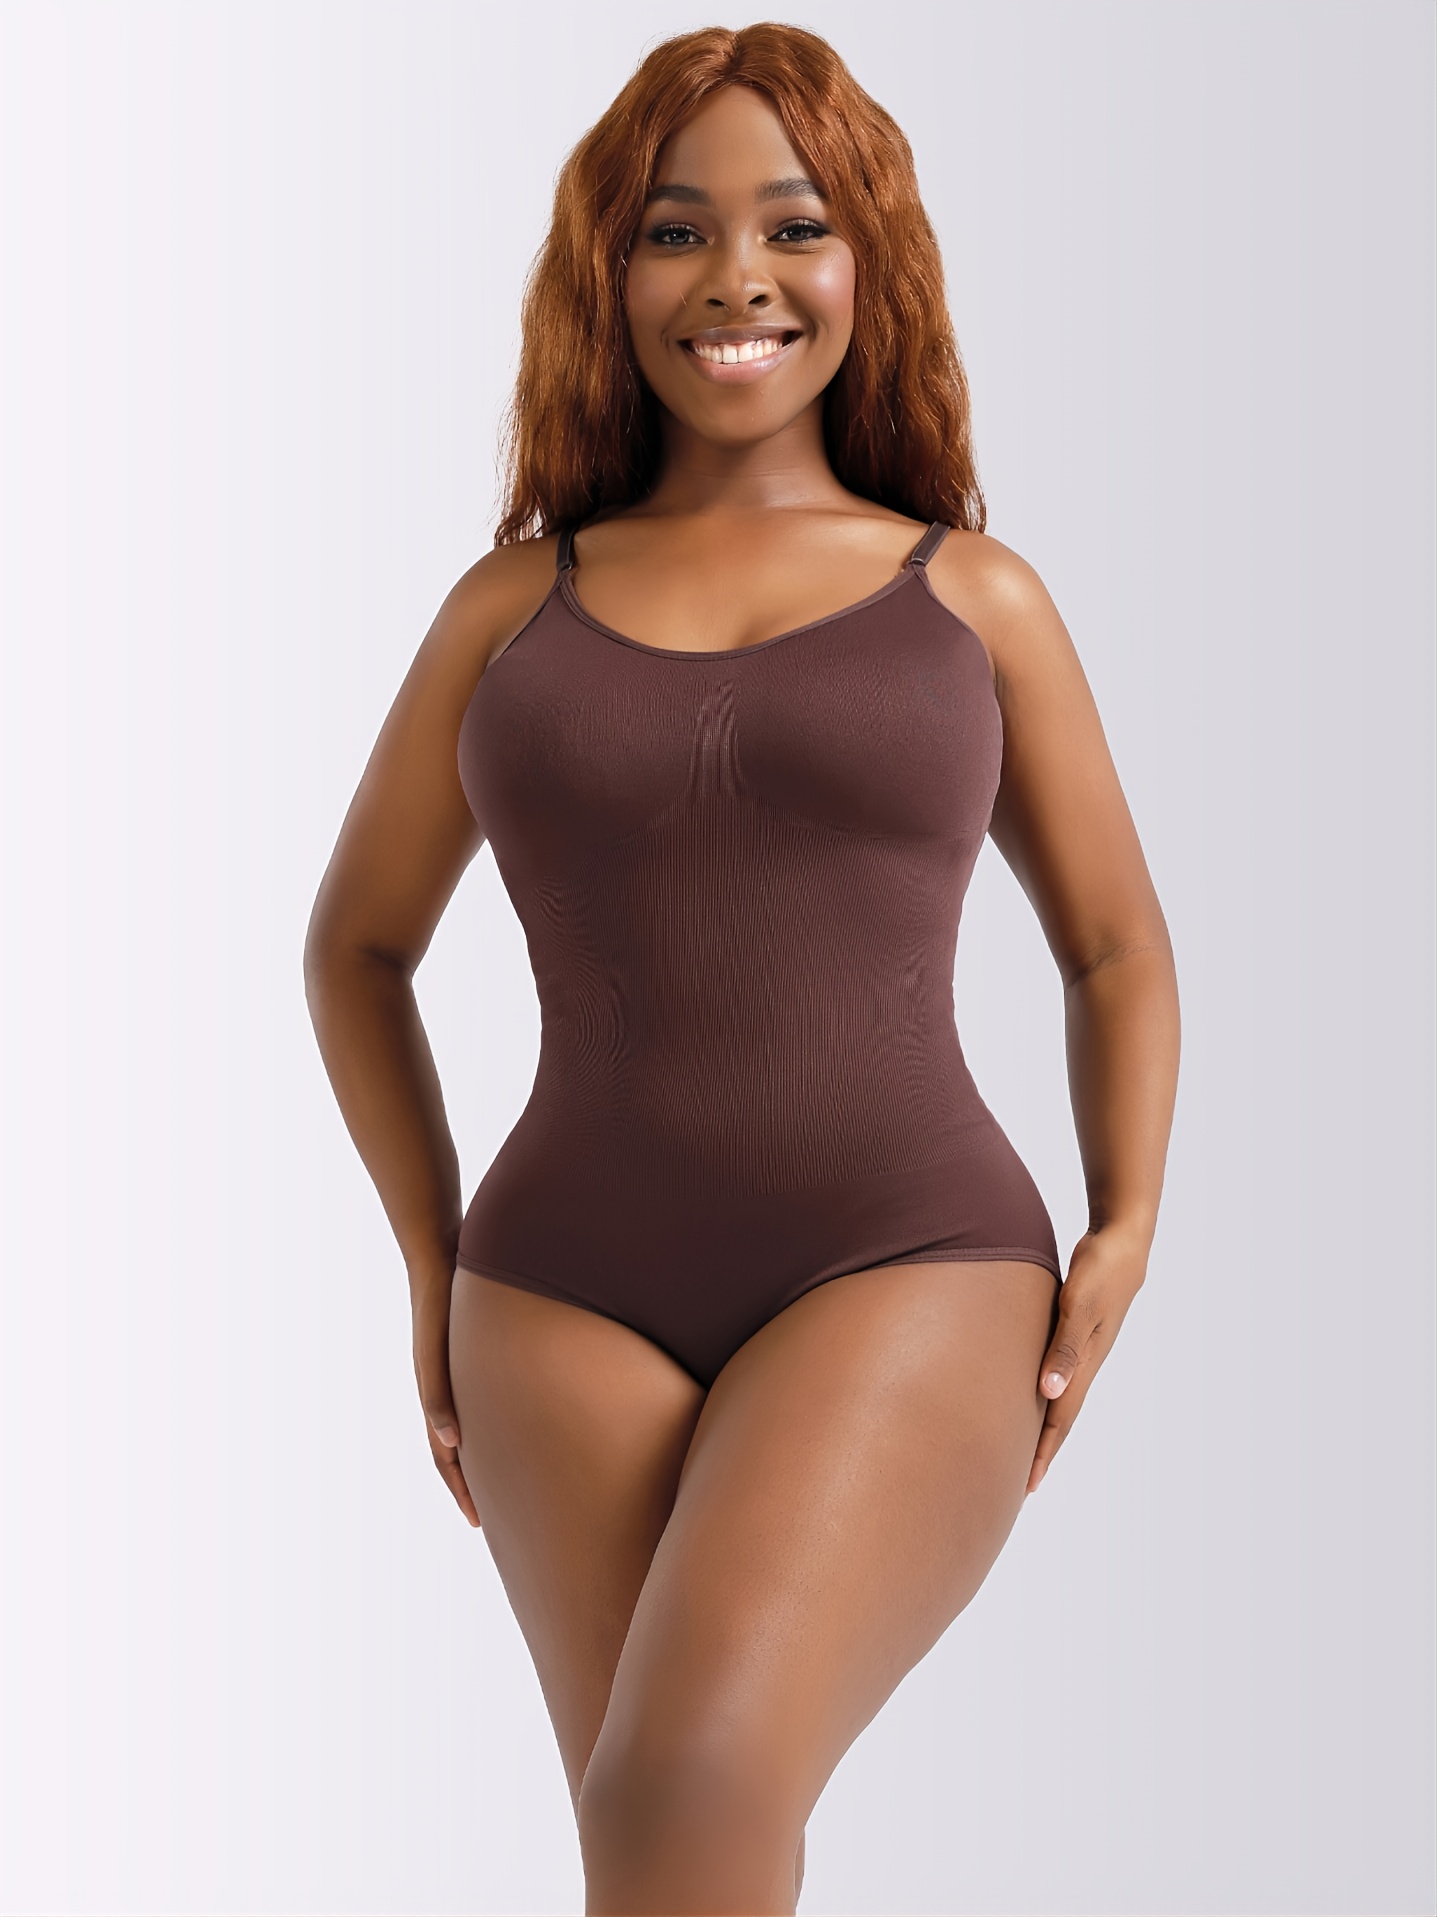 Body Beautiful Shapewear Women's Slimming Body Suit Shaper Tummy